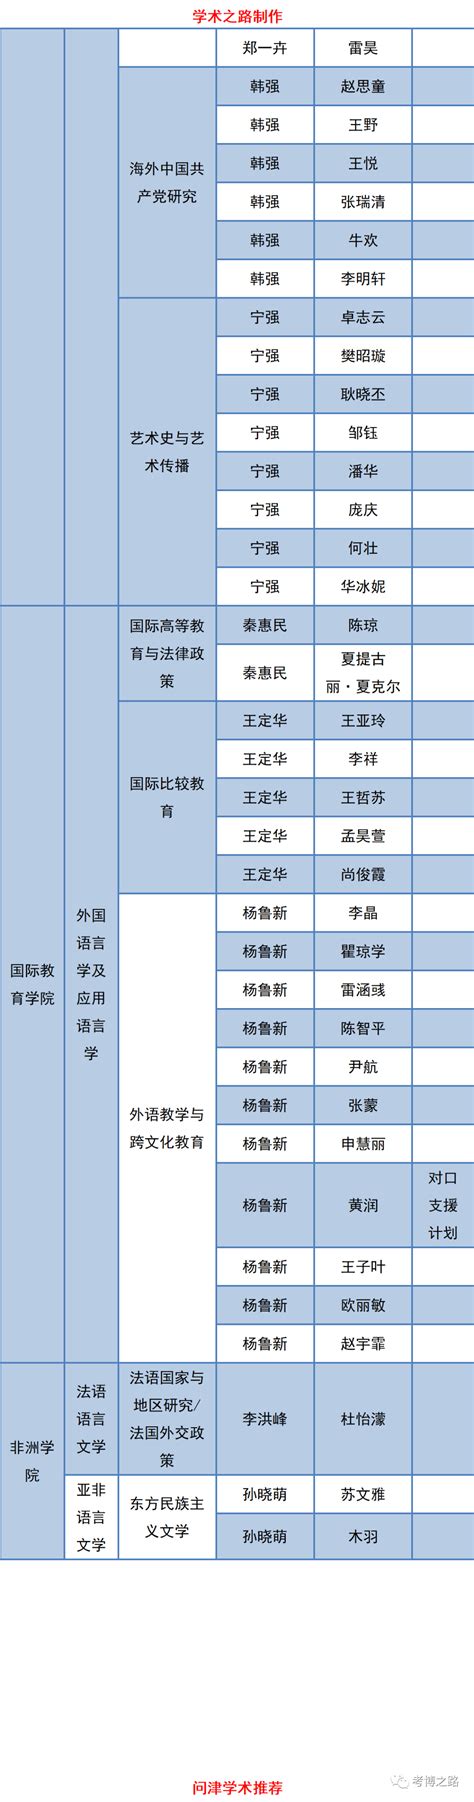 北京外国语大学2022年博士生入学考试准考名单及后续考试安排 | 自由微信 | FreeWeChat